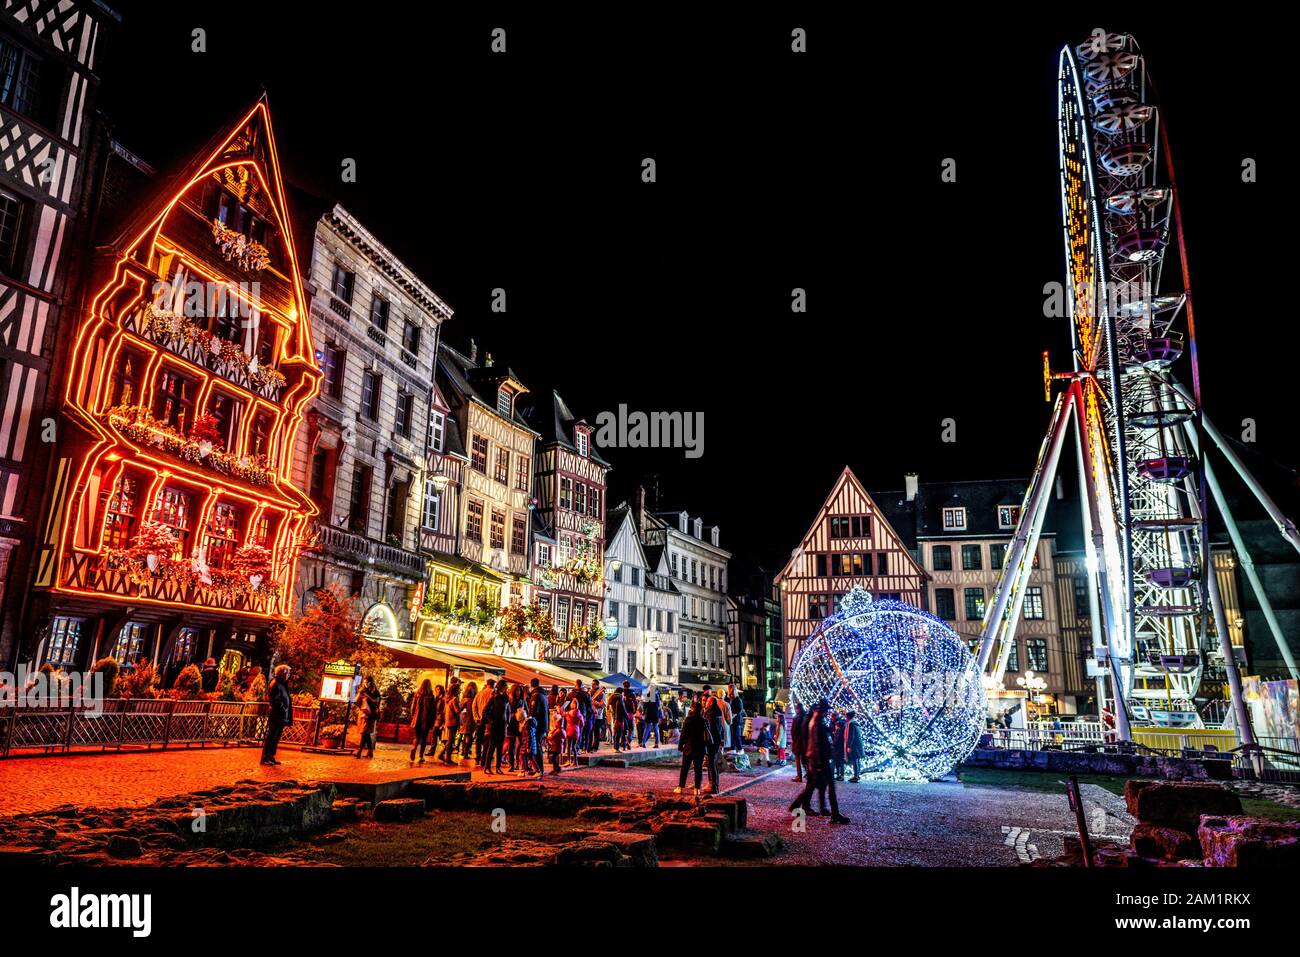 Rouen France, 23 décembre 2019 : Place du Vieux marché ou marché ancien illuminé la nuit pendant la période de Noël à Rouen Normandie France Banque D'Images